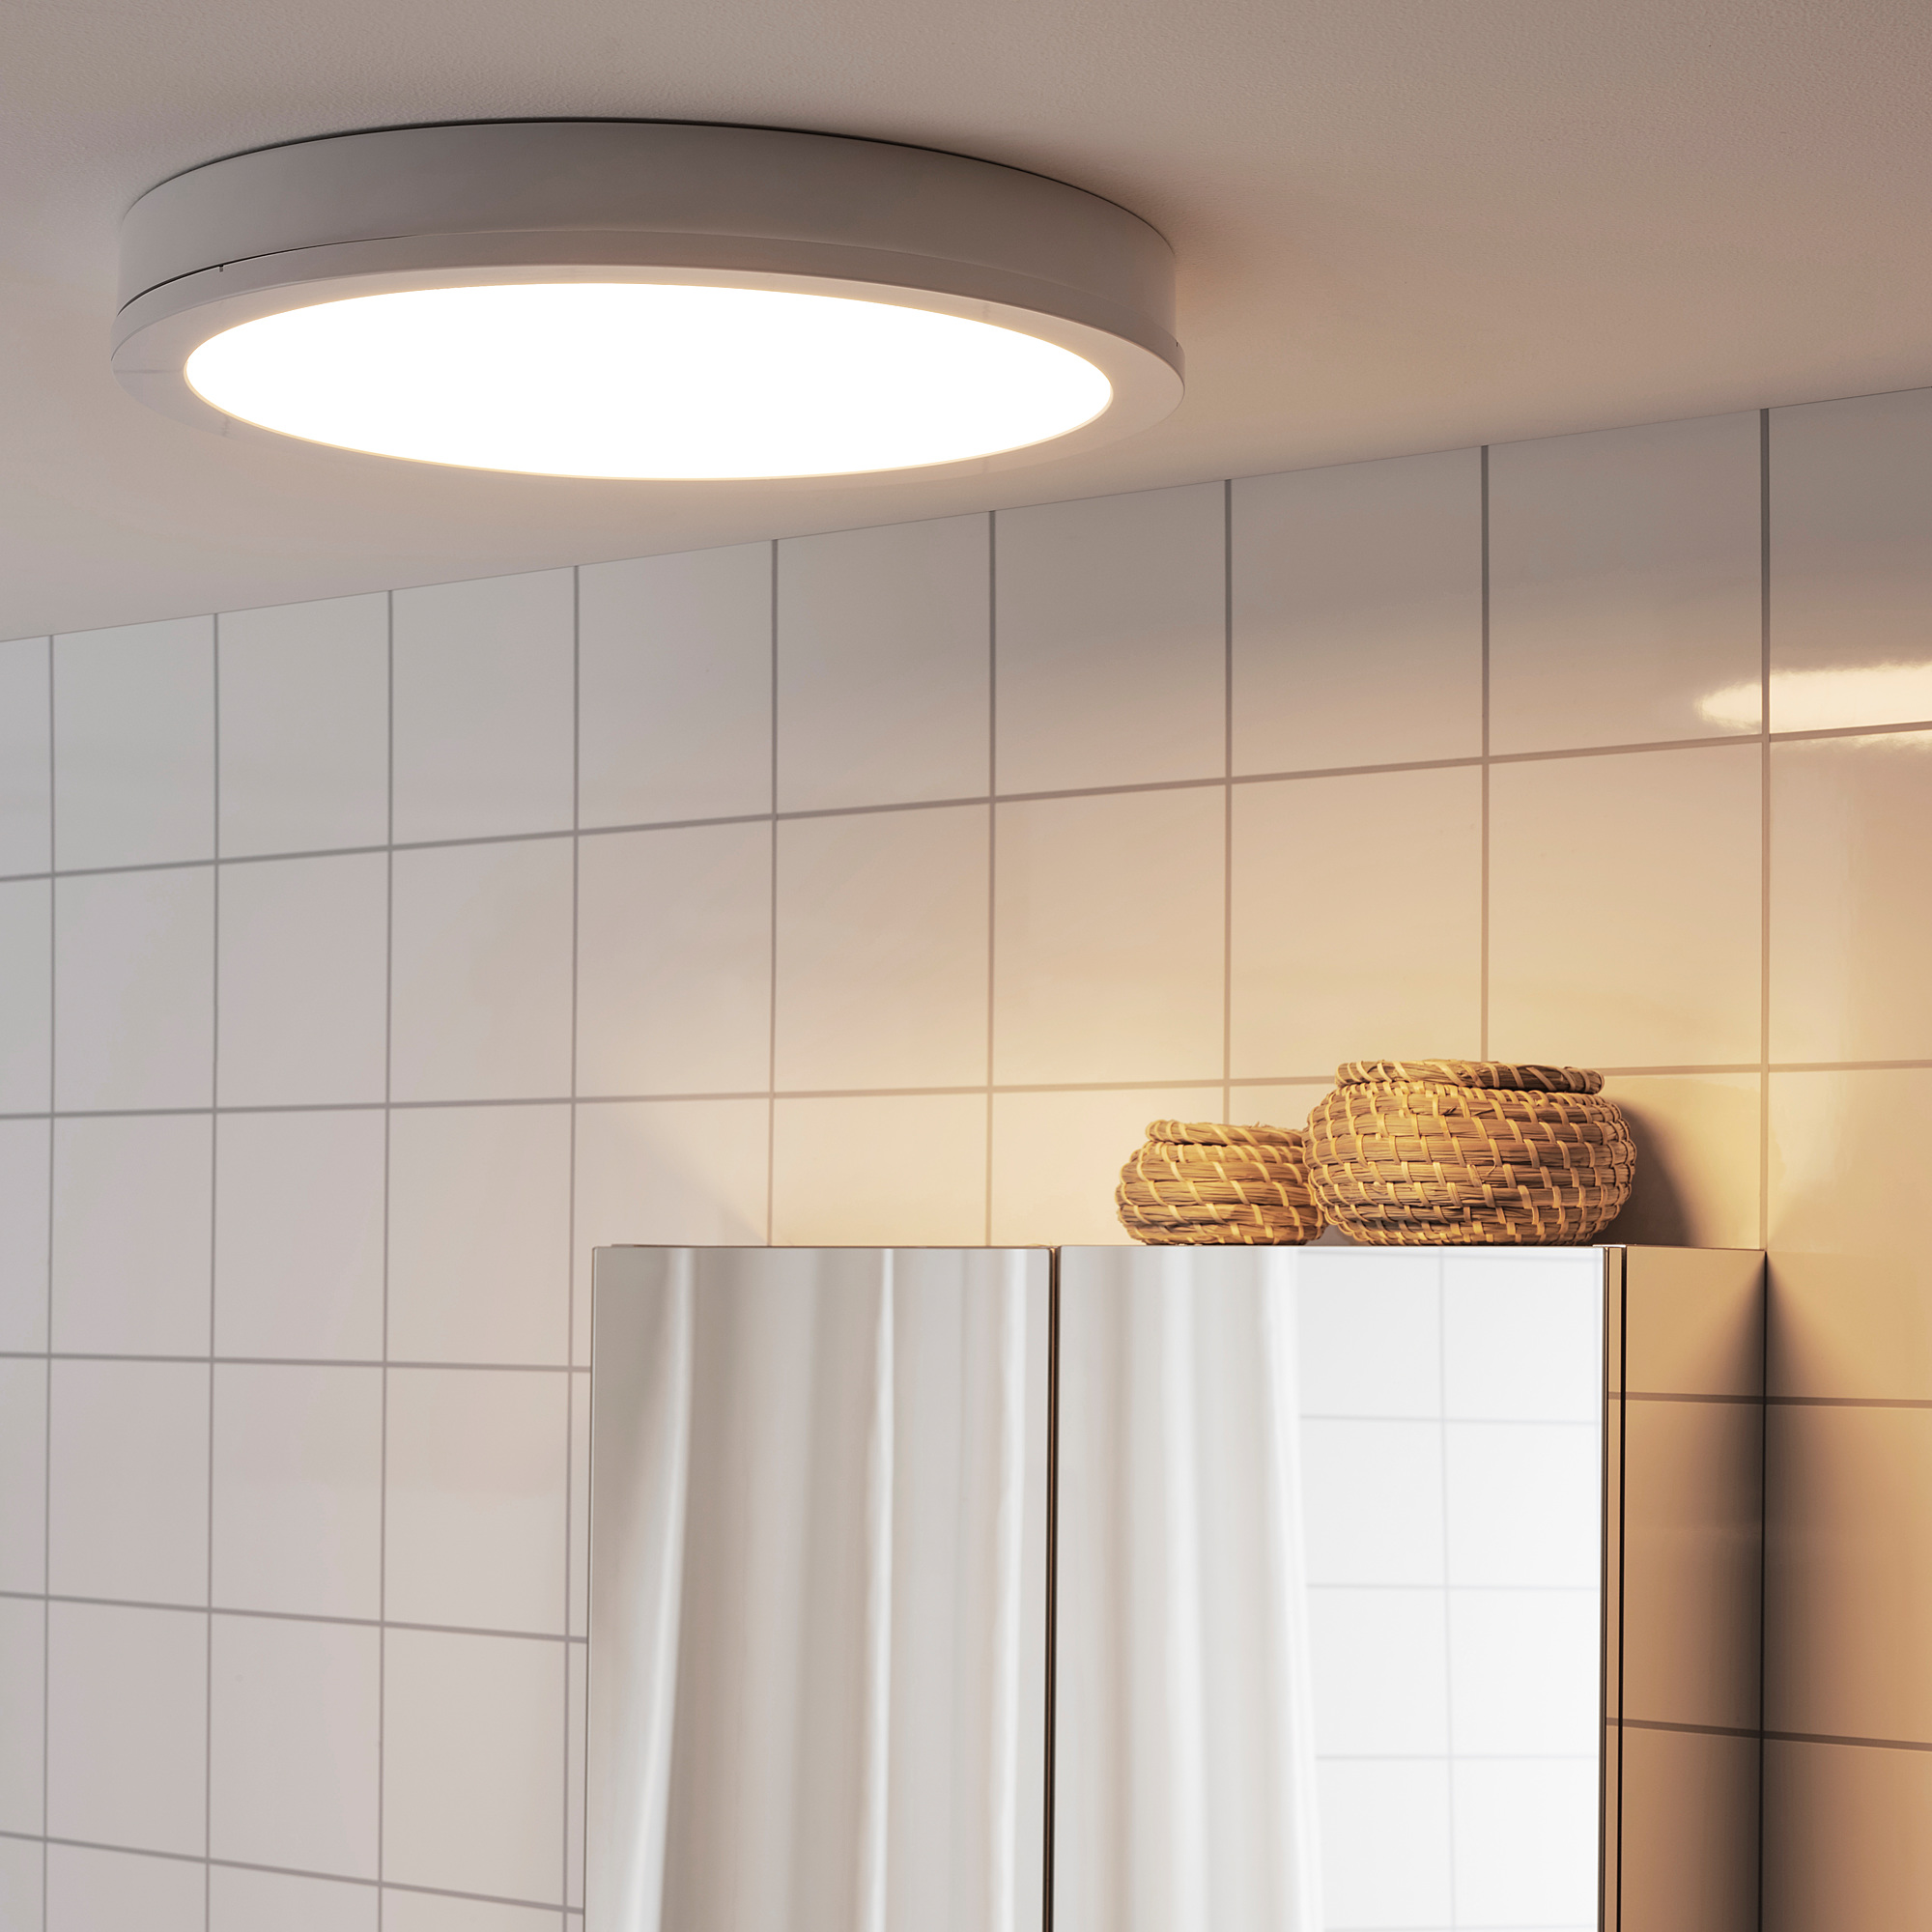 Светодиодные светильники для ванной комнаты